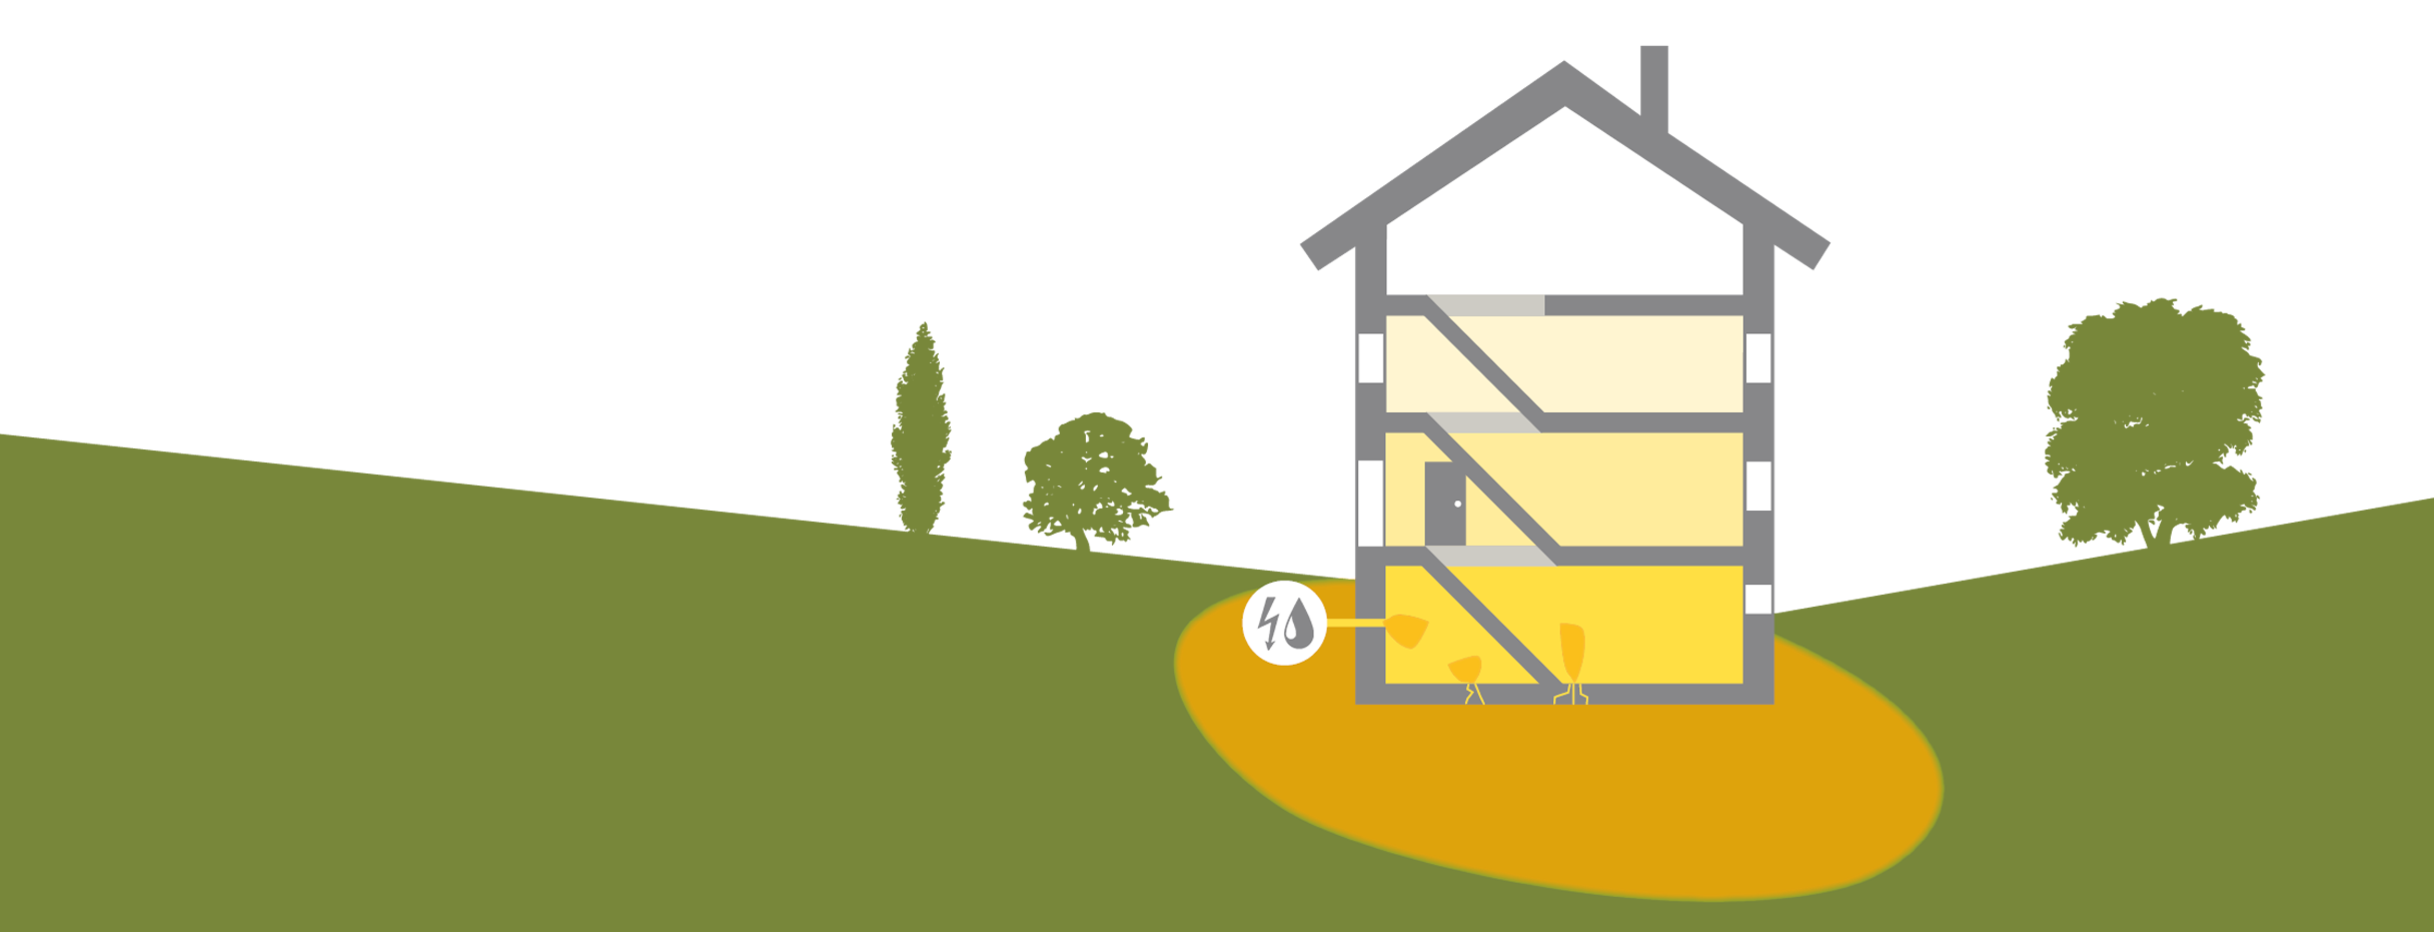 Grafik: Radon tritt in ein Haus ein